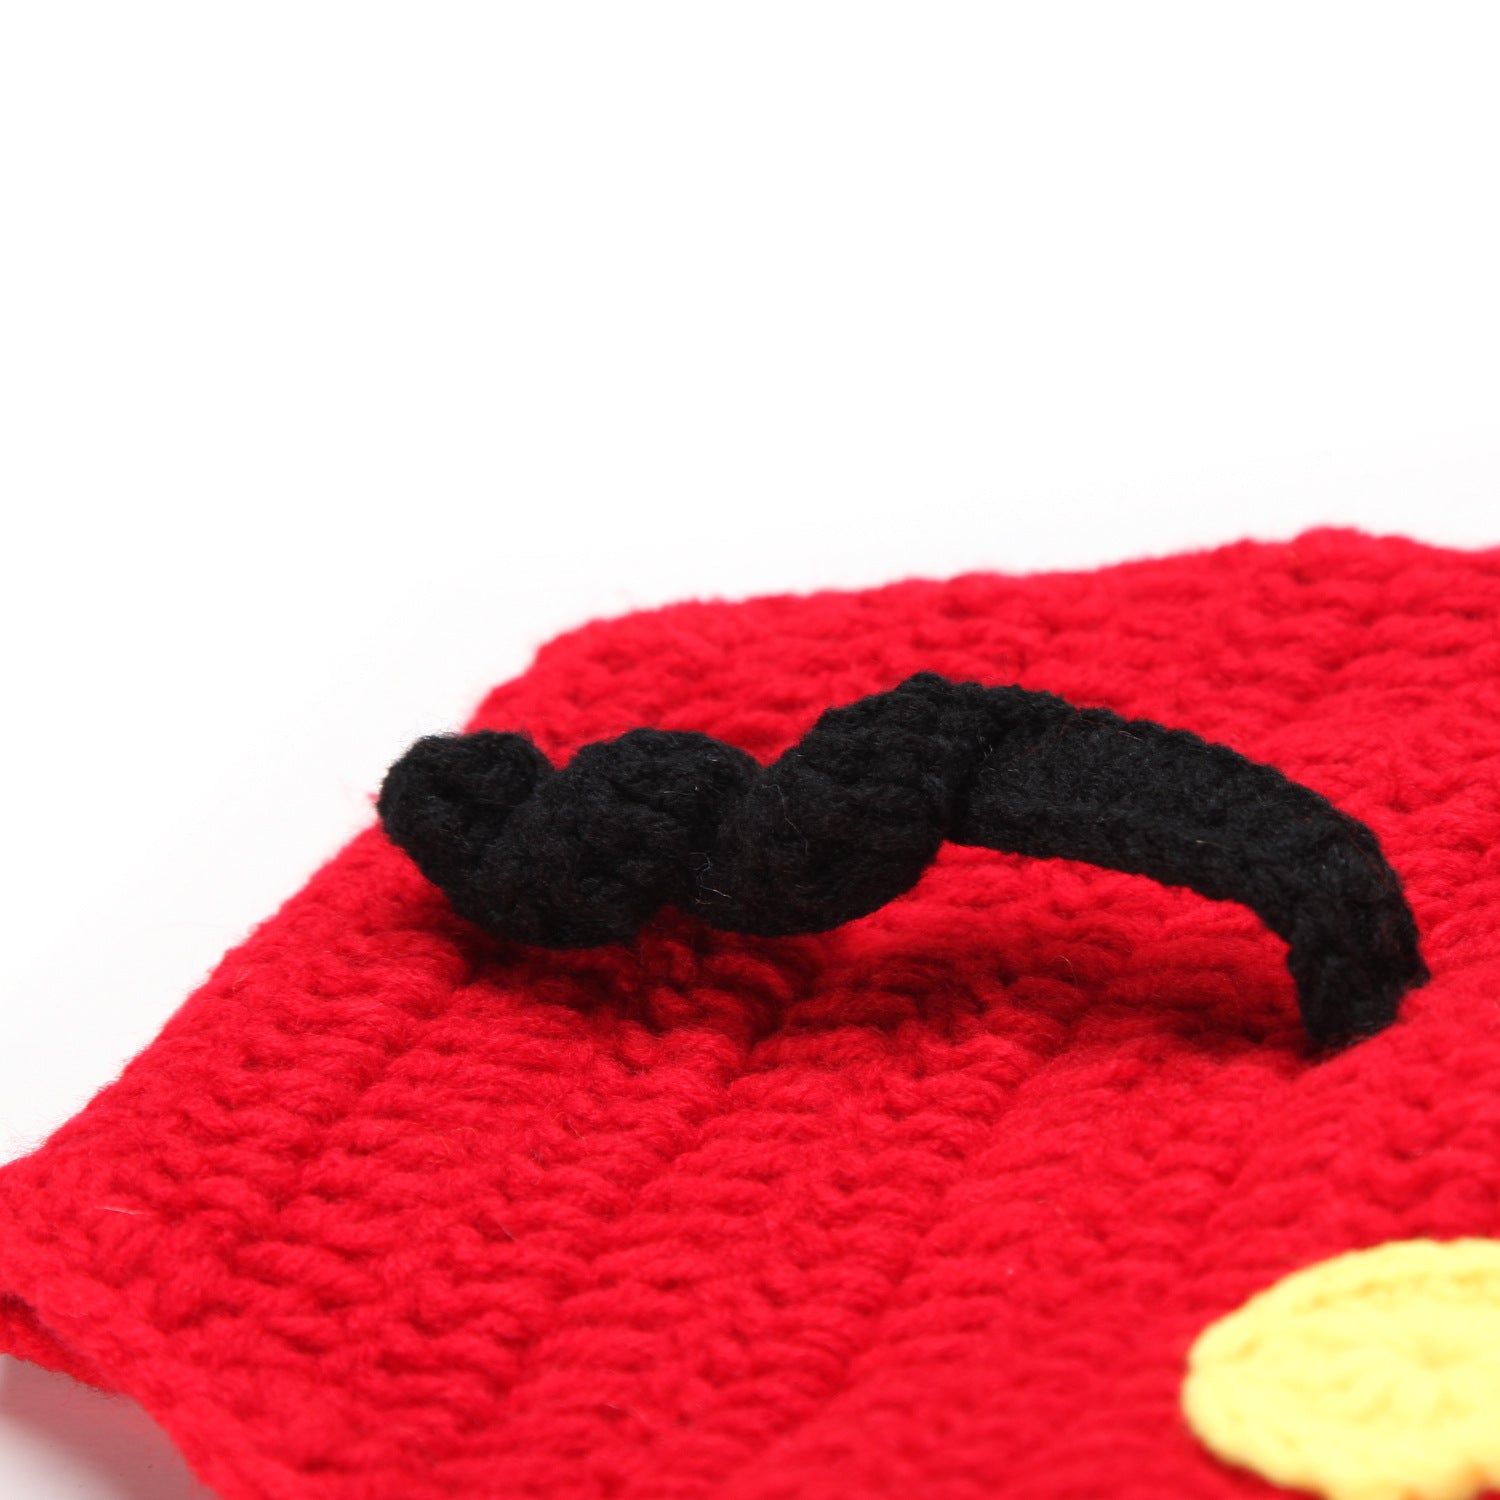 Mickey Newborn Baby Crochet Costume